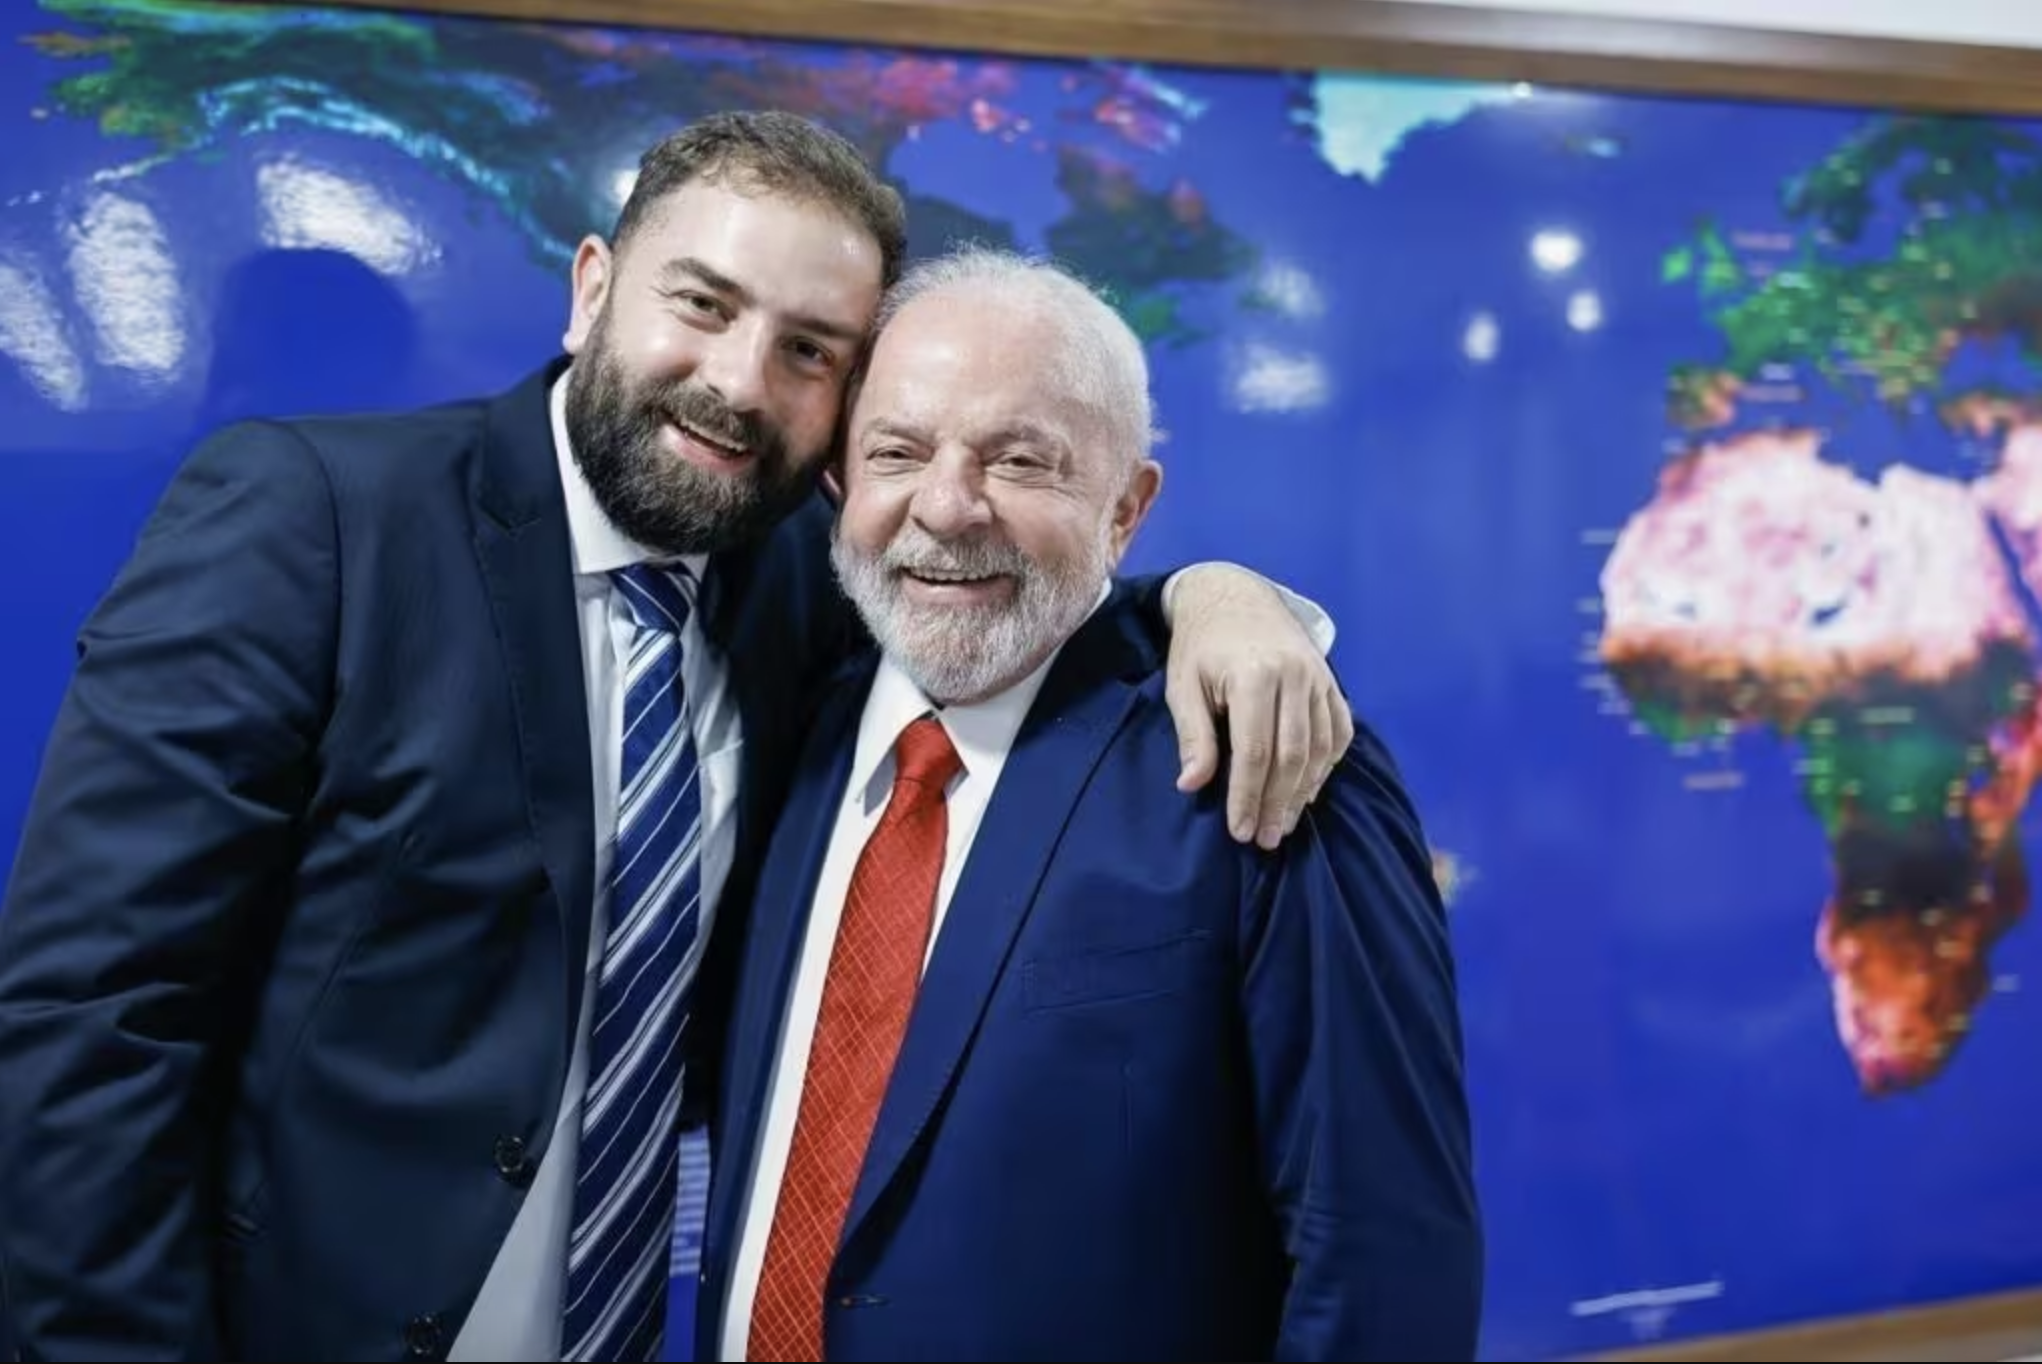 Filho de Lula que agrediu mulher é proibido de se aproximar dela pela Justiça